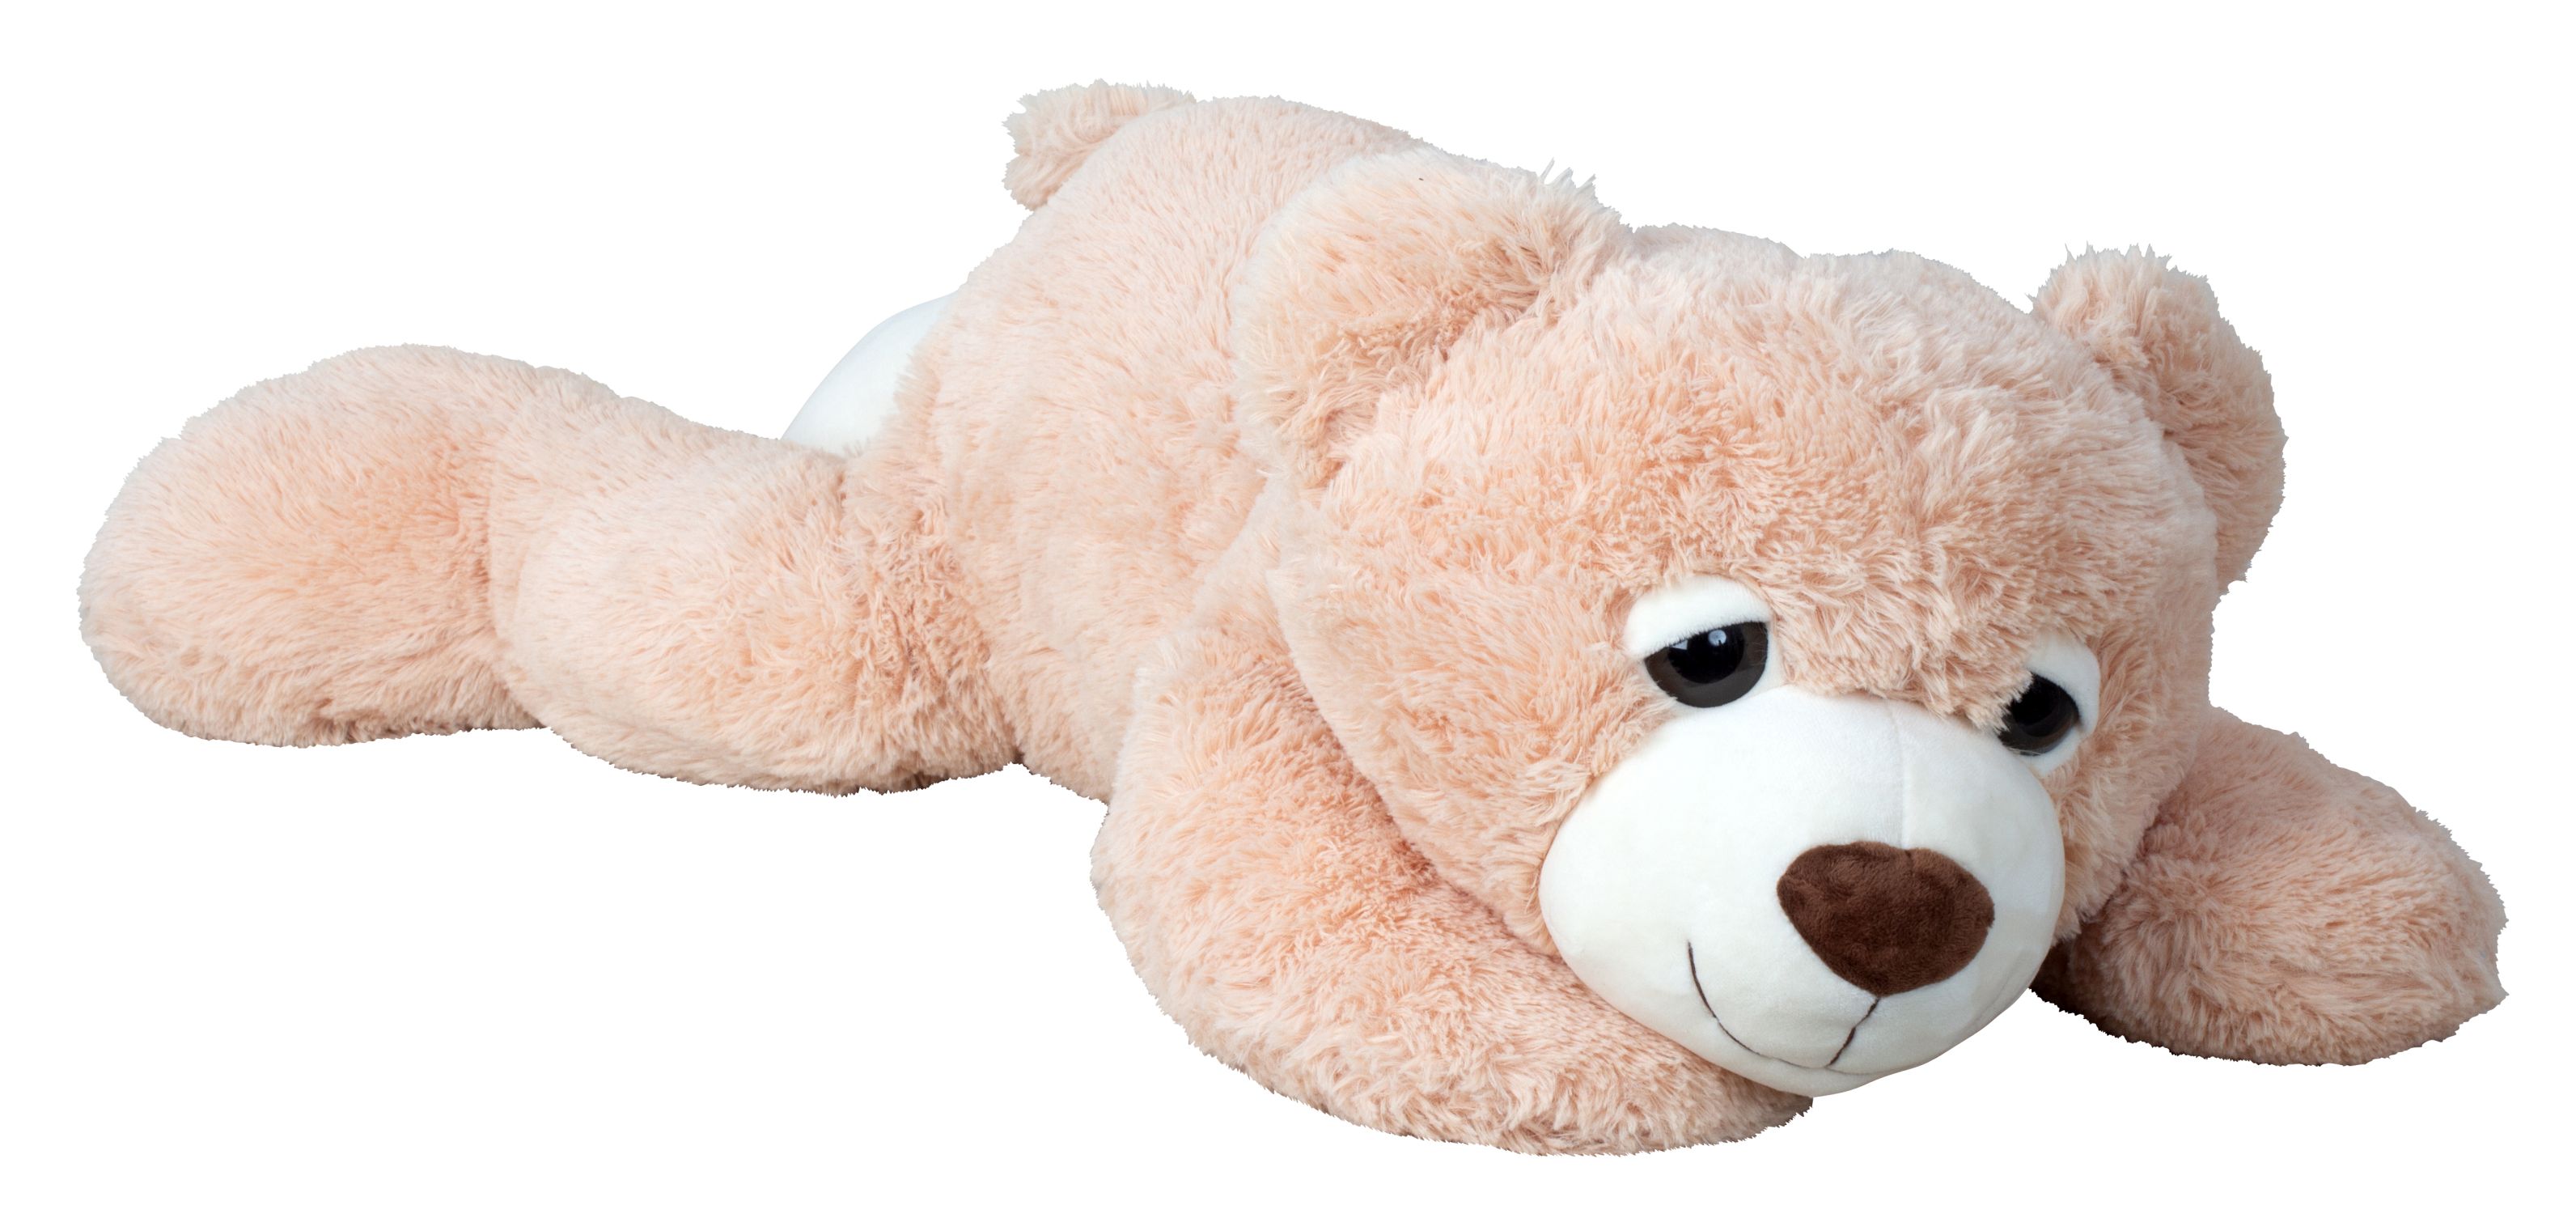 Riesen Teddybär Kuschelbär XXL 100 cm groß Plüschbär Kuscheltier samtig weich 